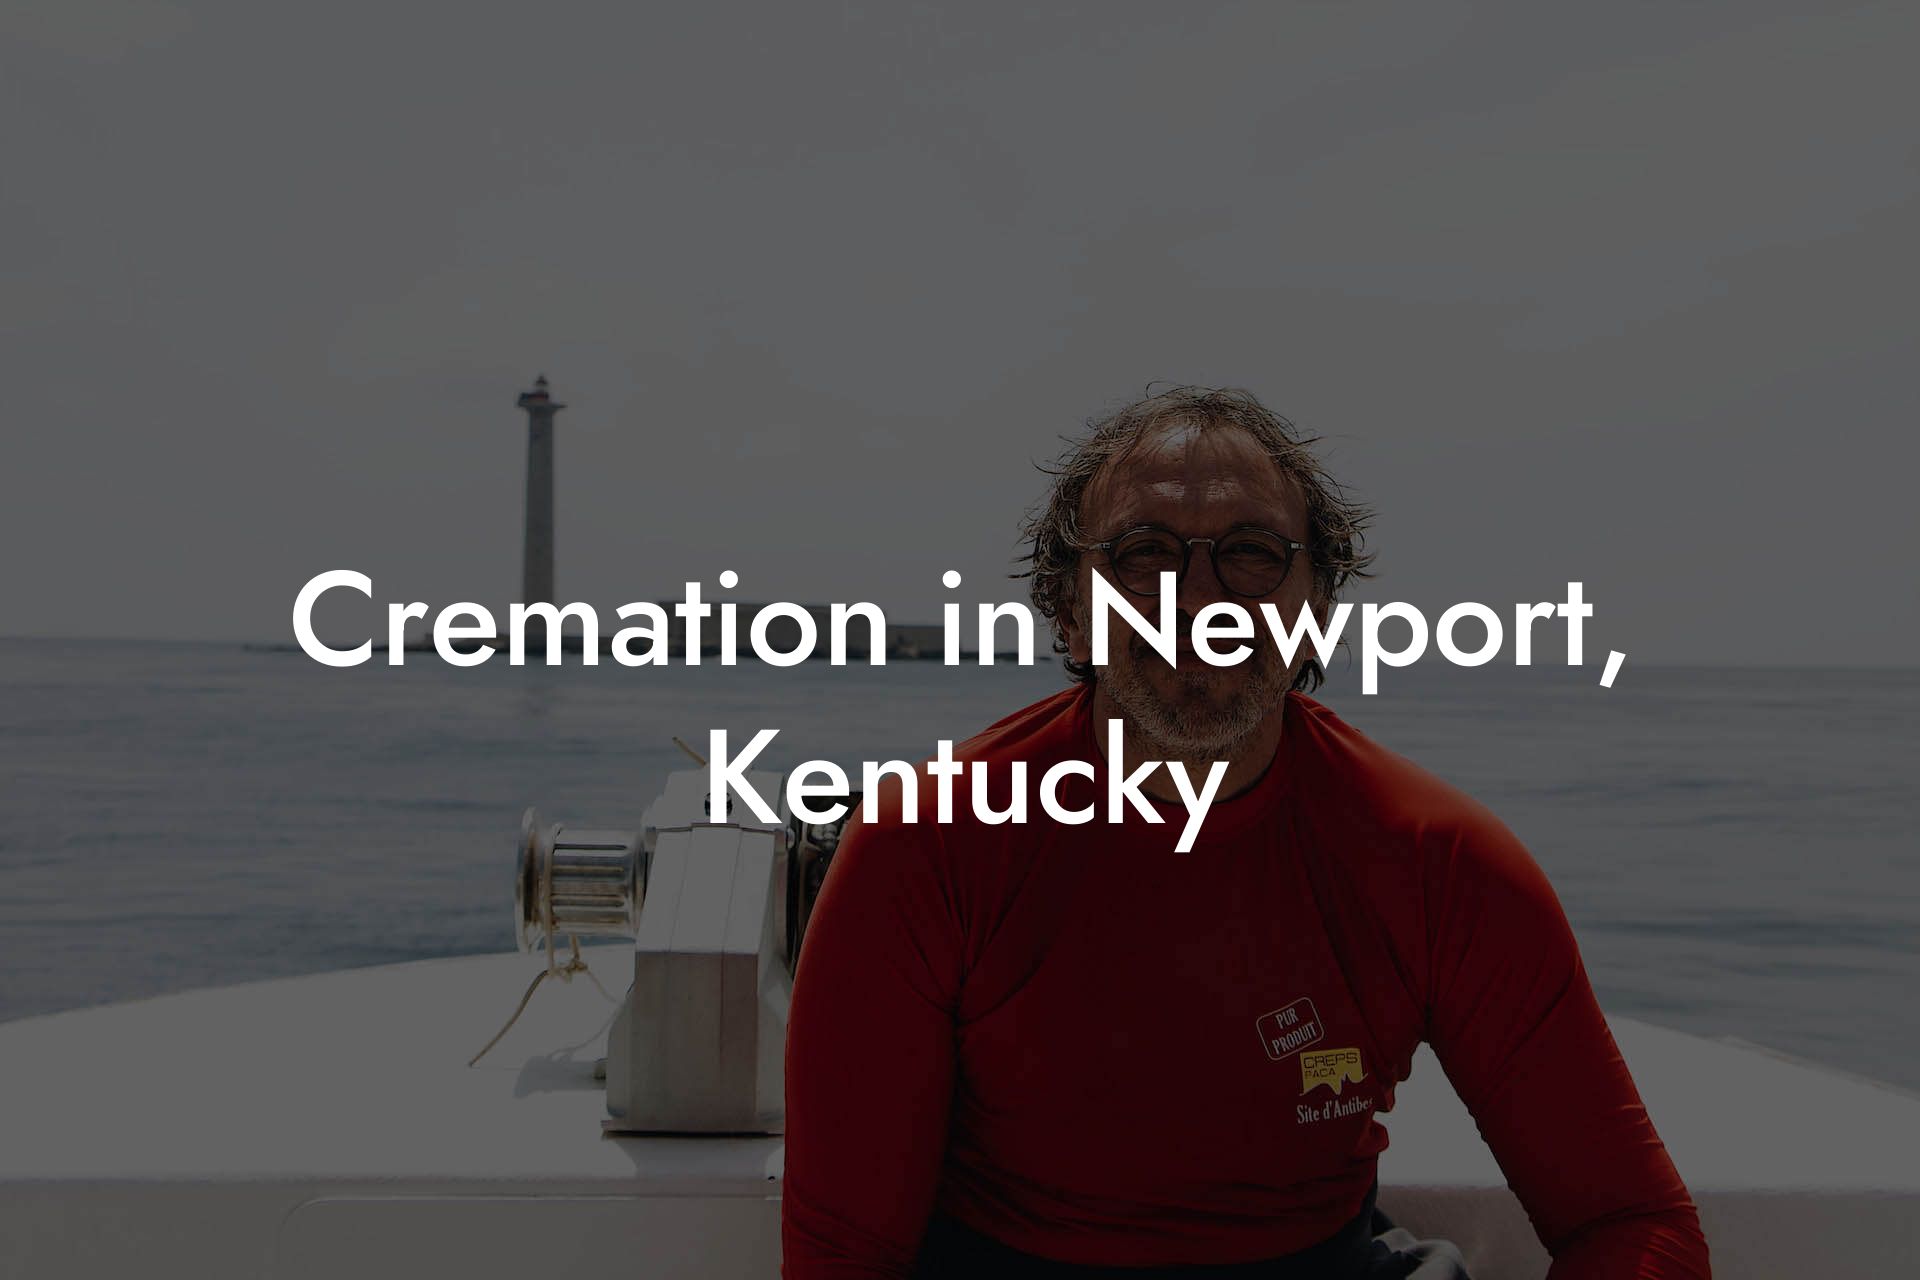 Cremation in Newport, Kentucky